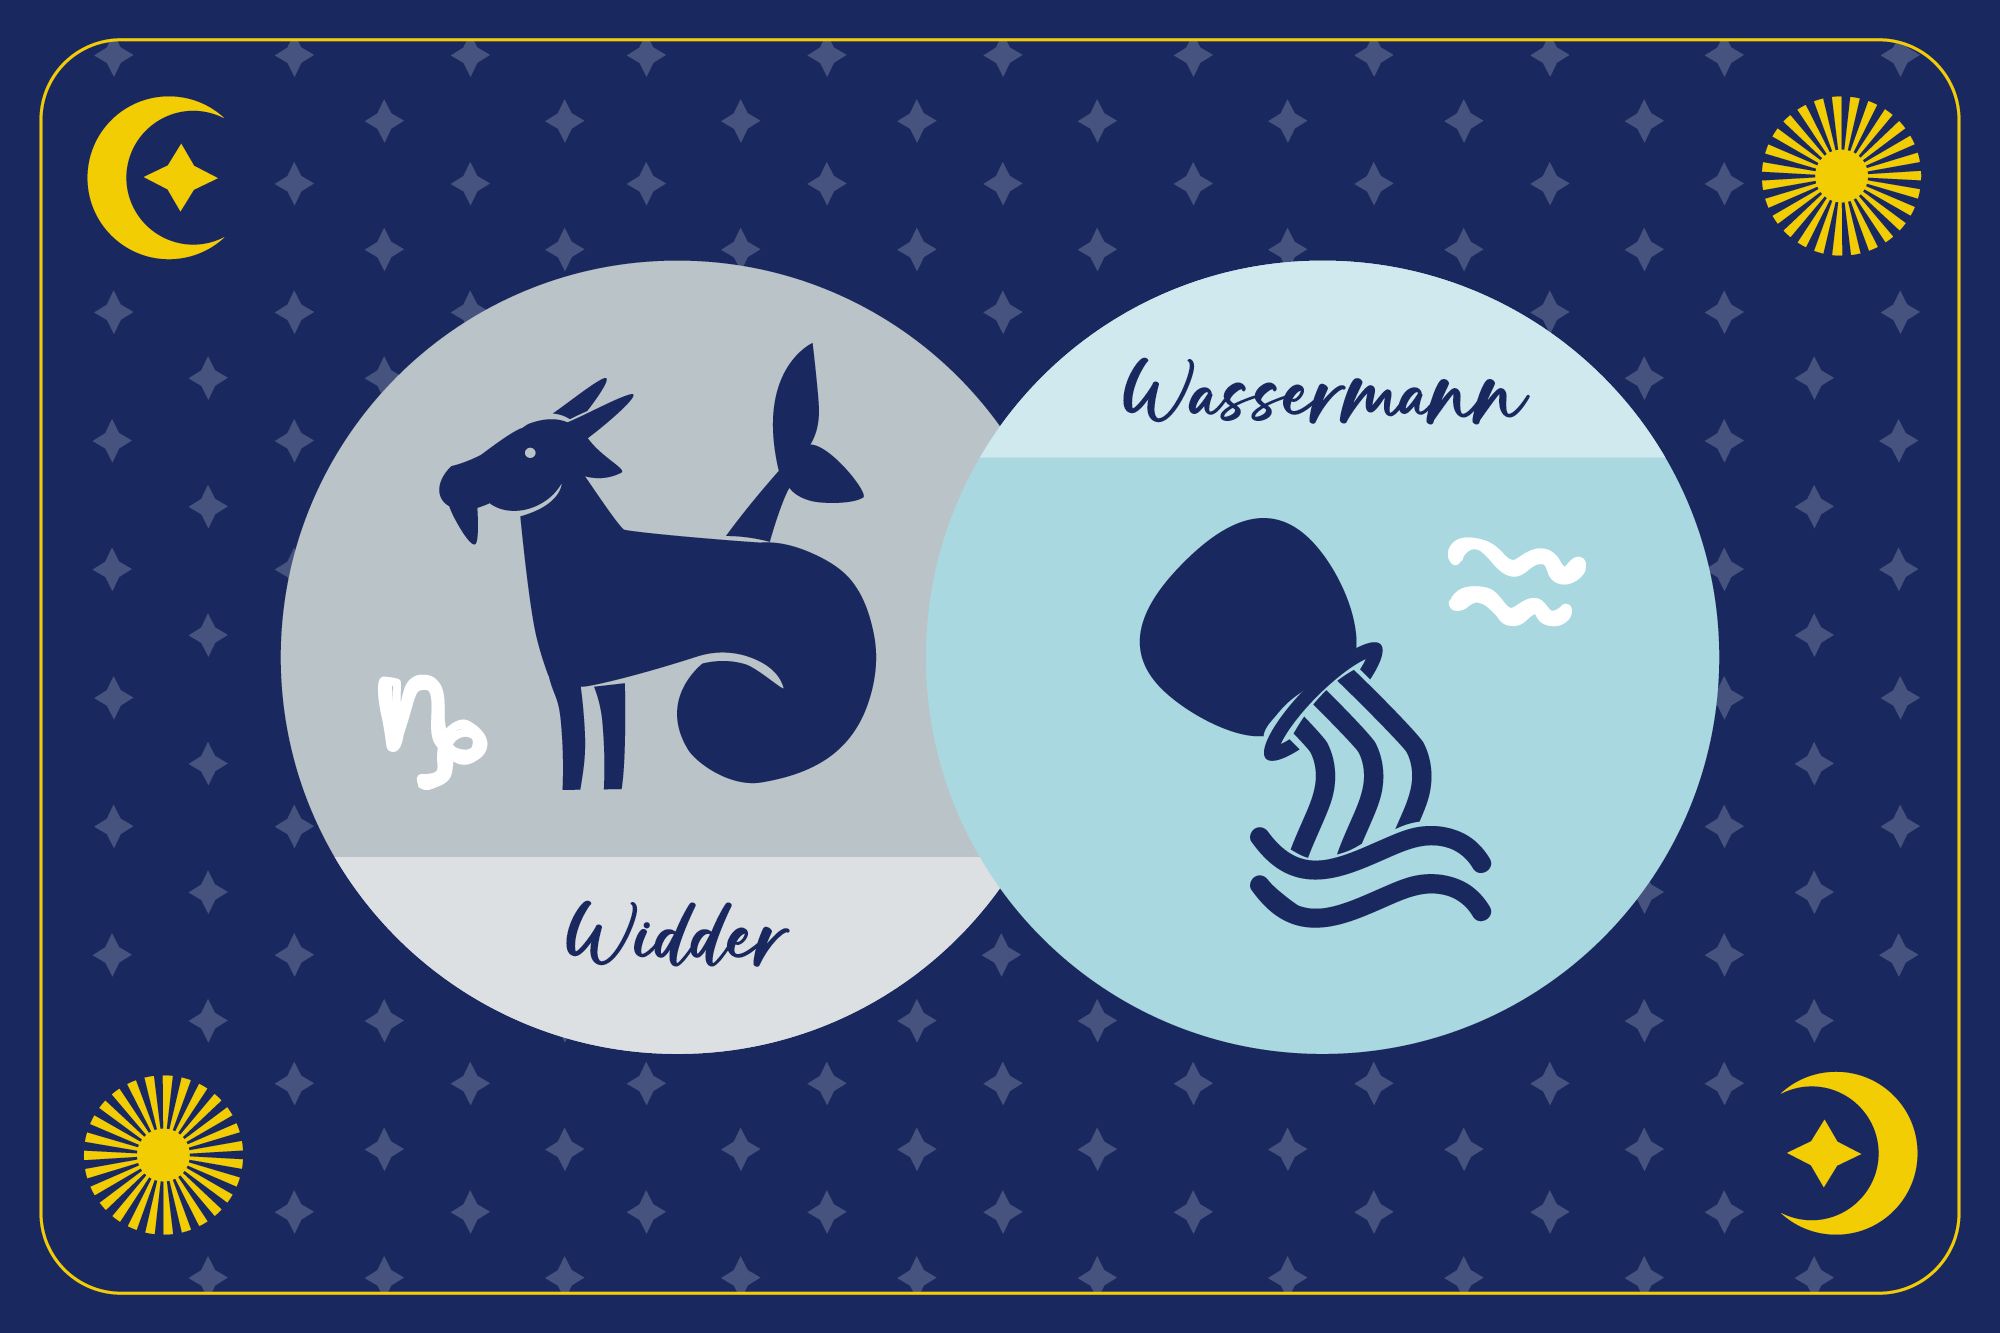 Sternzeichen Wassermann in hellblauem Kreis und Sternzeichen Widder in grauem Kreis auf dunkelblauem Hintergrund mit Mond, Sonne und Sternen